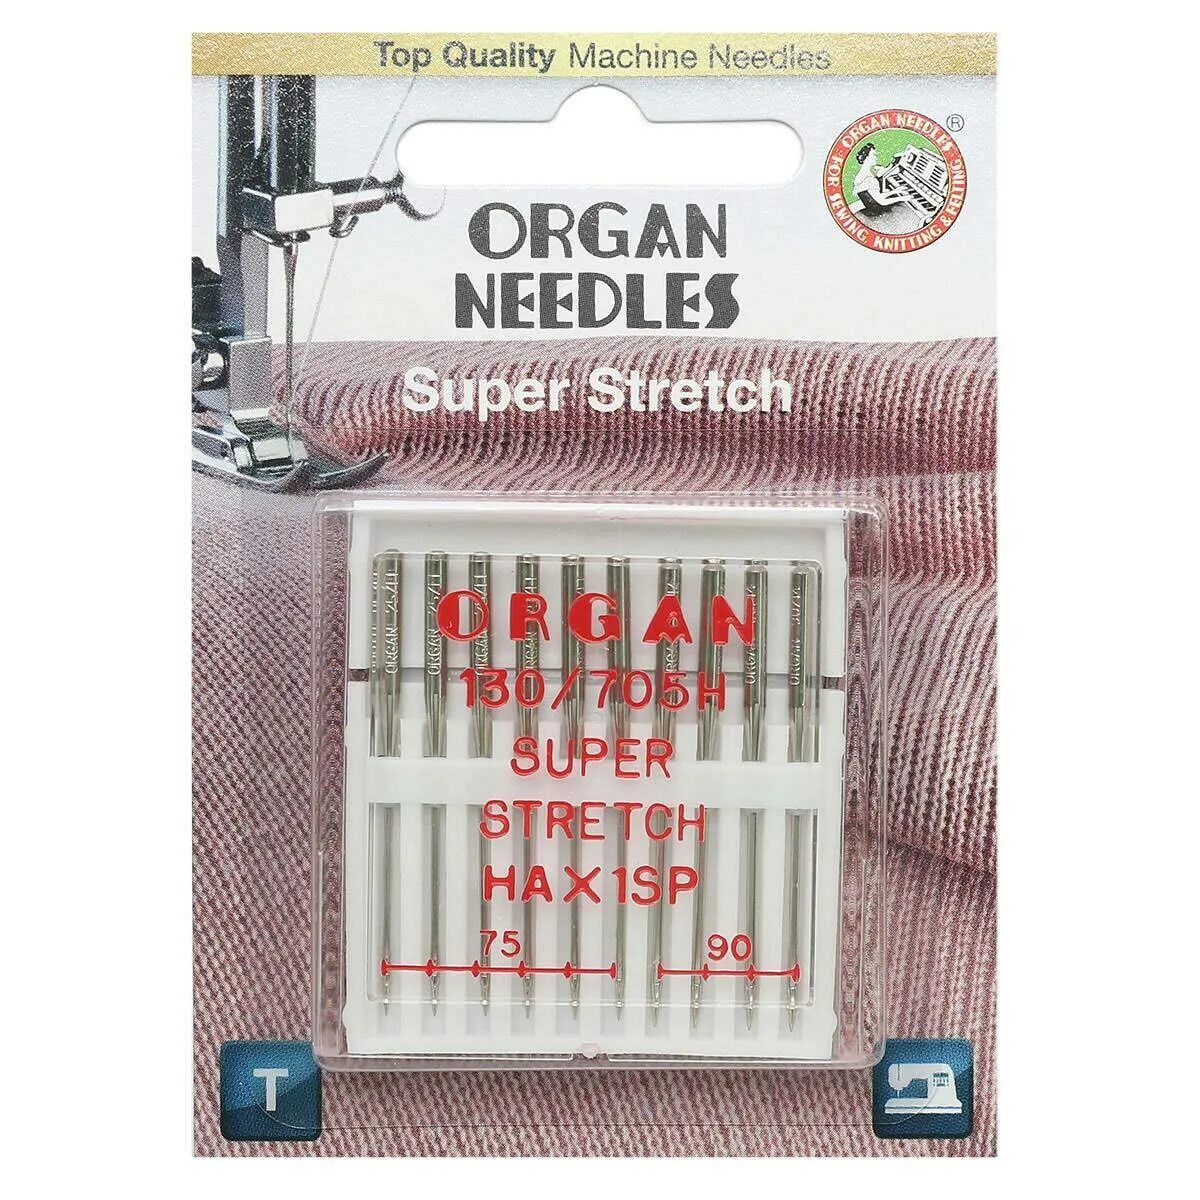 Иглы для швейных машин Organ супер стрейч. Иглы орган супер стрейч 75. Игла/иглы Organ super stretch 75. Игла супер стрейч для швейной машинки 75-90.